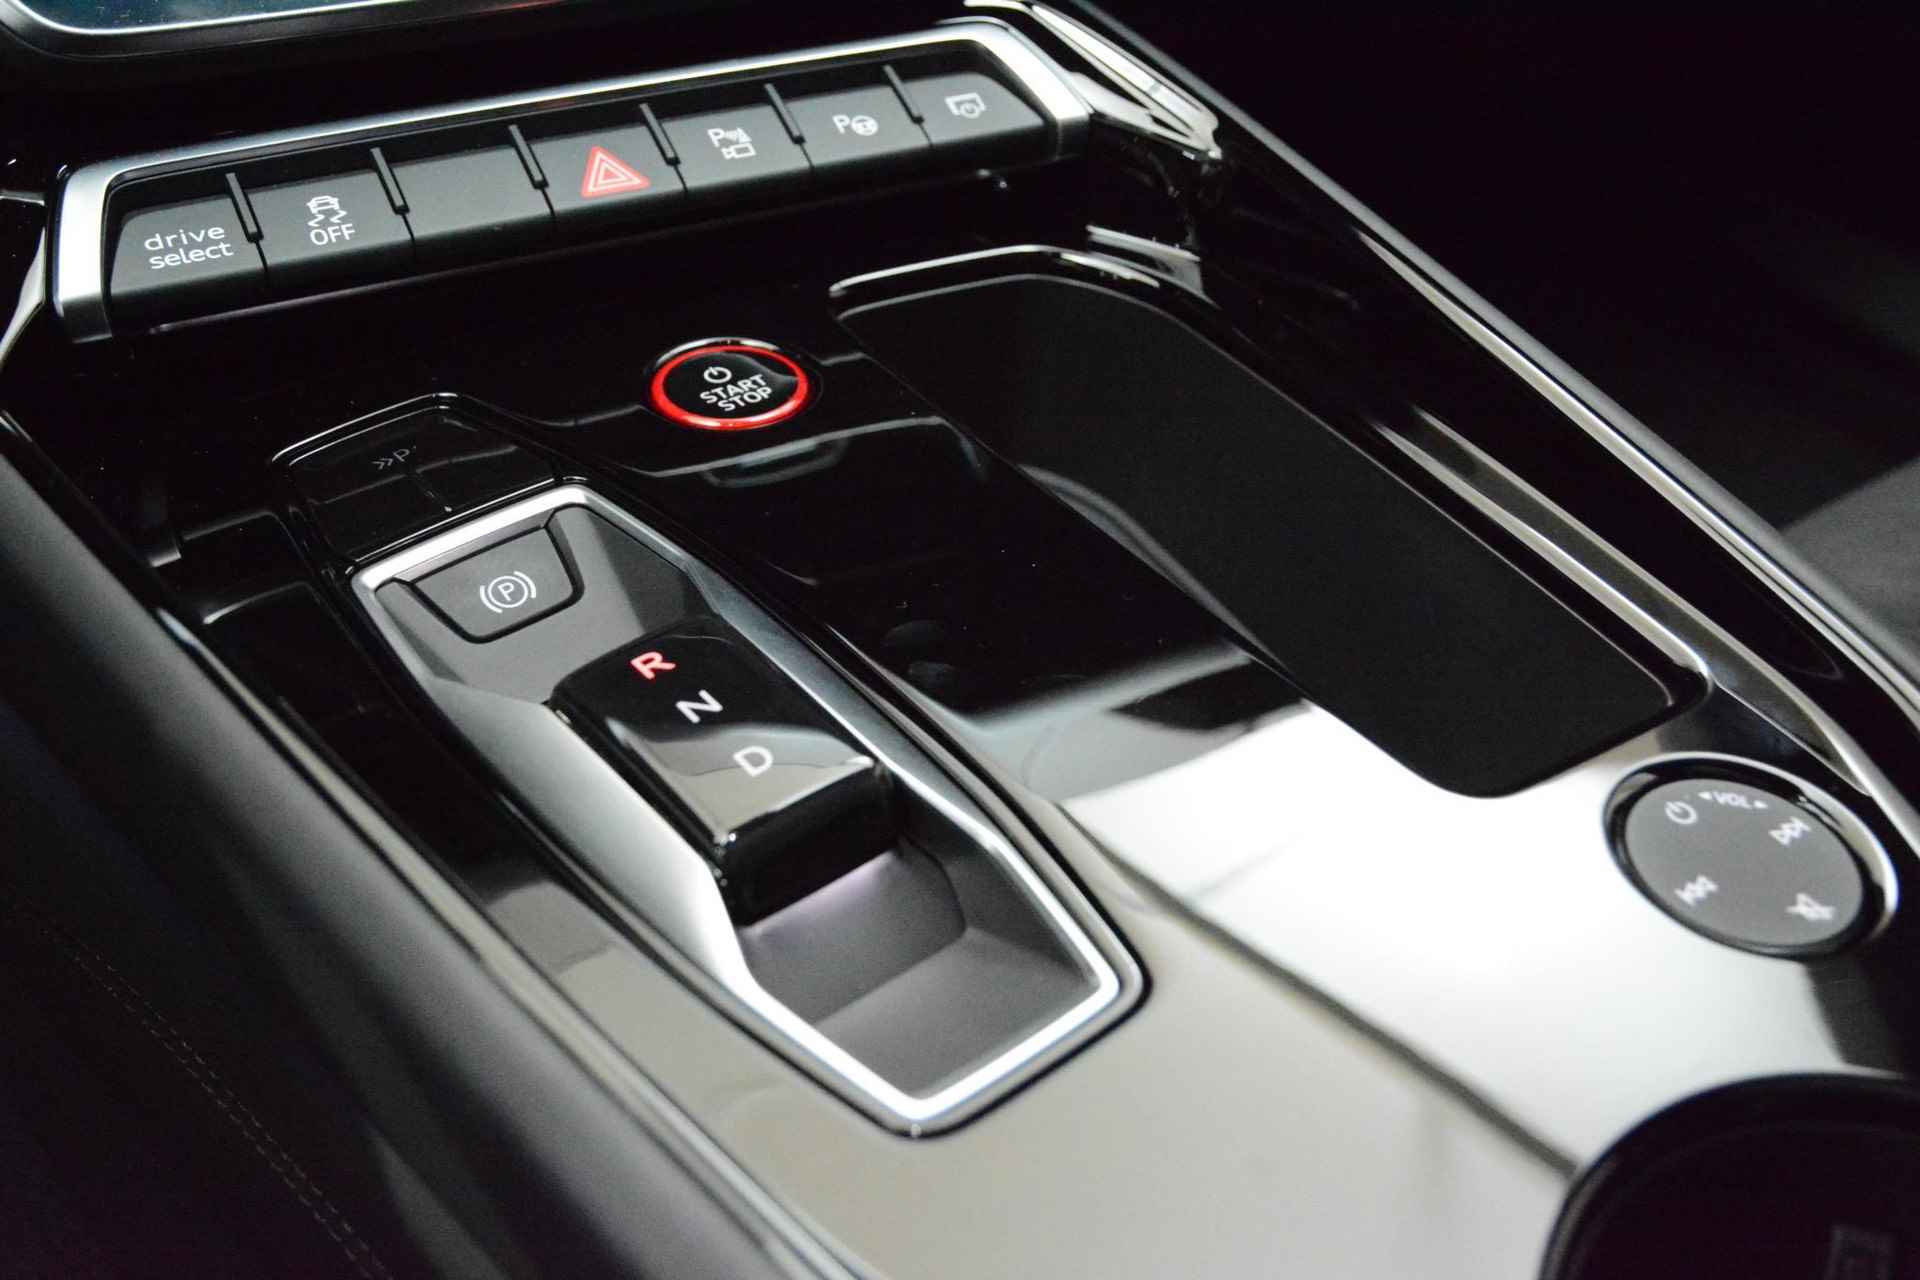 Audi e-tron GT GT Competition 93 kWh 476 PK | Nieuw | NU VAN € 143.900,00 VOOR € 123.900,00!!!! | UNIEKE KLEUR TIEFGRUN ENIGE IN NL!!! | Navigatie | Maxtrix-Laser koplampen | 360 camera | Autonome parkeerfunctie | Dynamische vierwielbesturing | Dodehoek detectie | Glazen panoramadak | Head-up display | Dynamiekpakket plus | Audi virtual cockpit plus | Stoelverwarming voor en achter | Lichtpakket plus ambient light | Optiekpakket zwart plus - 19/30